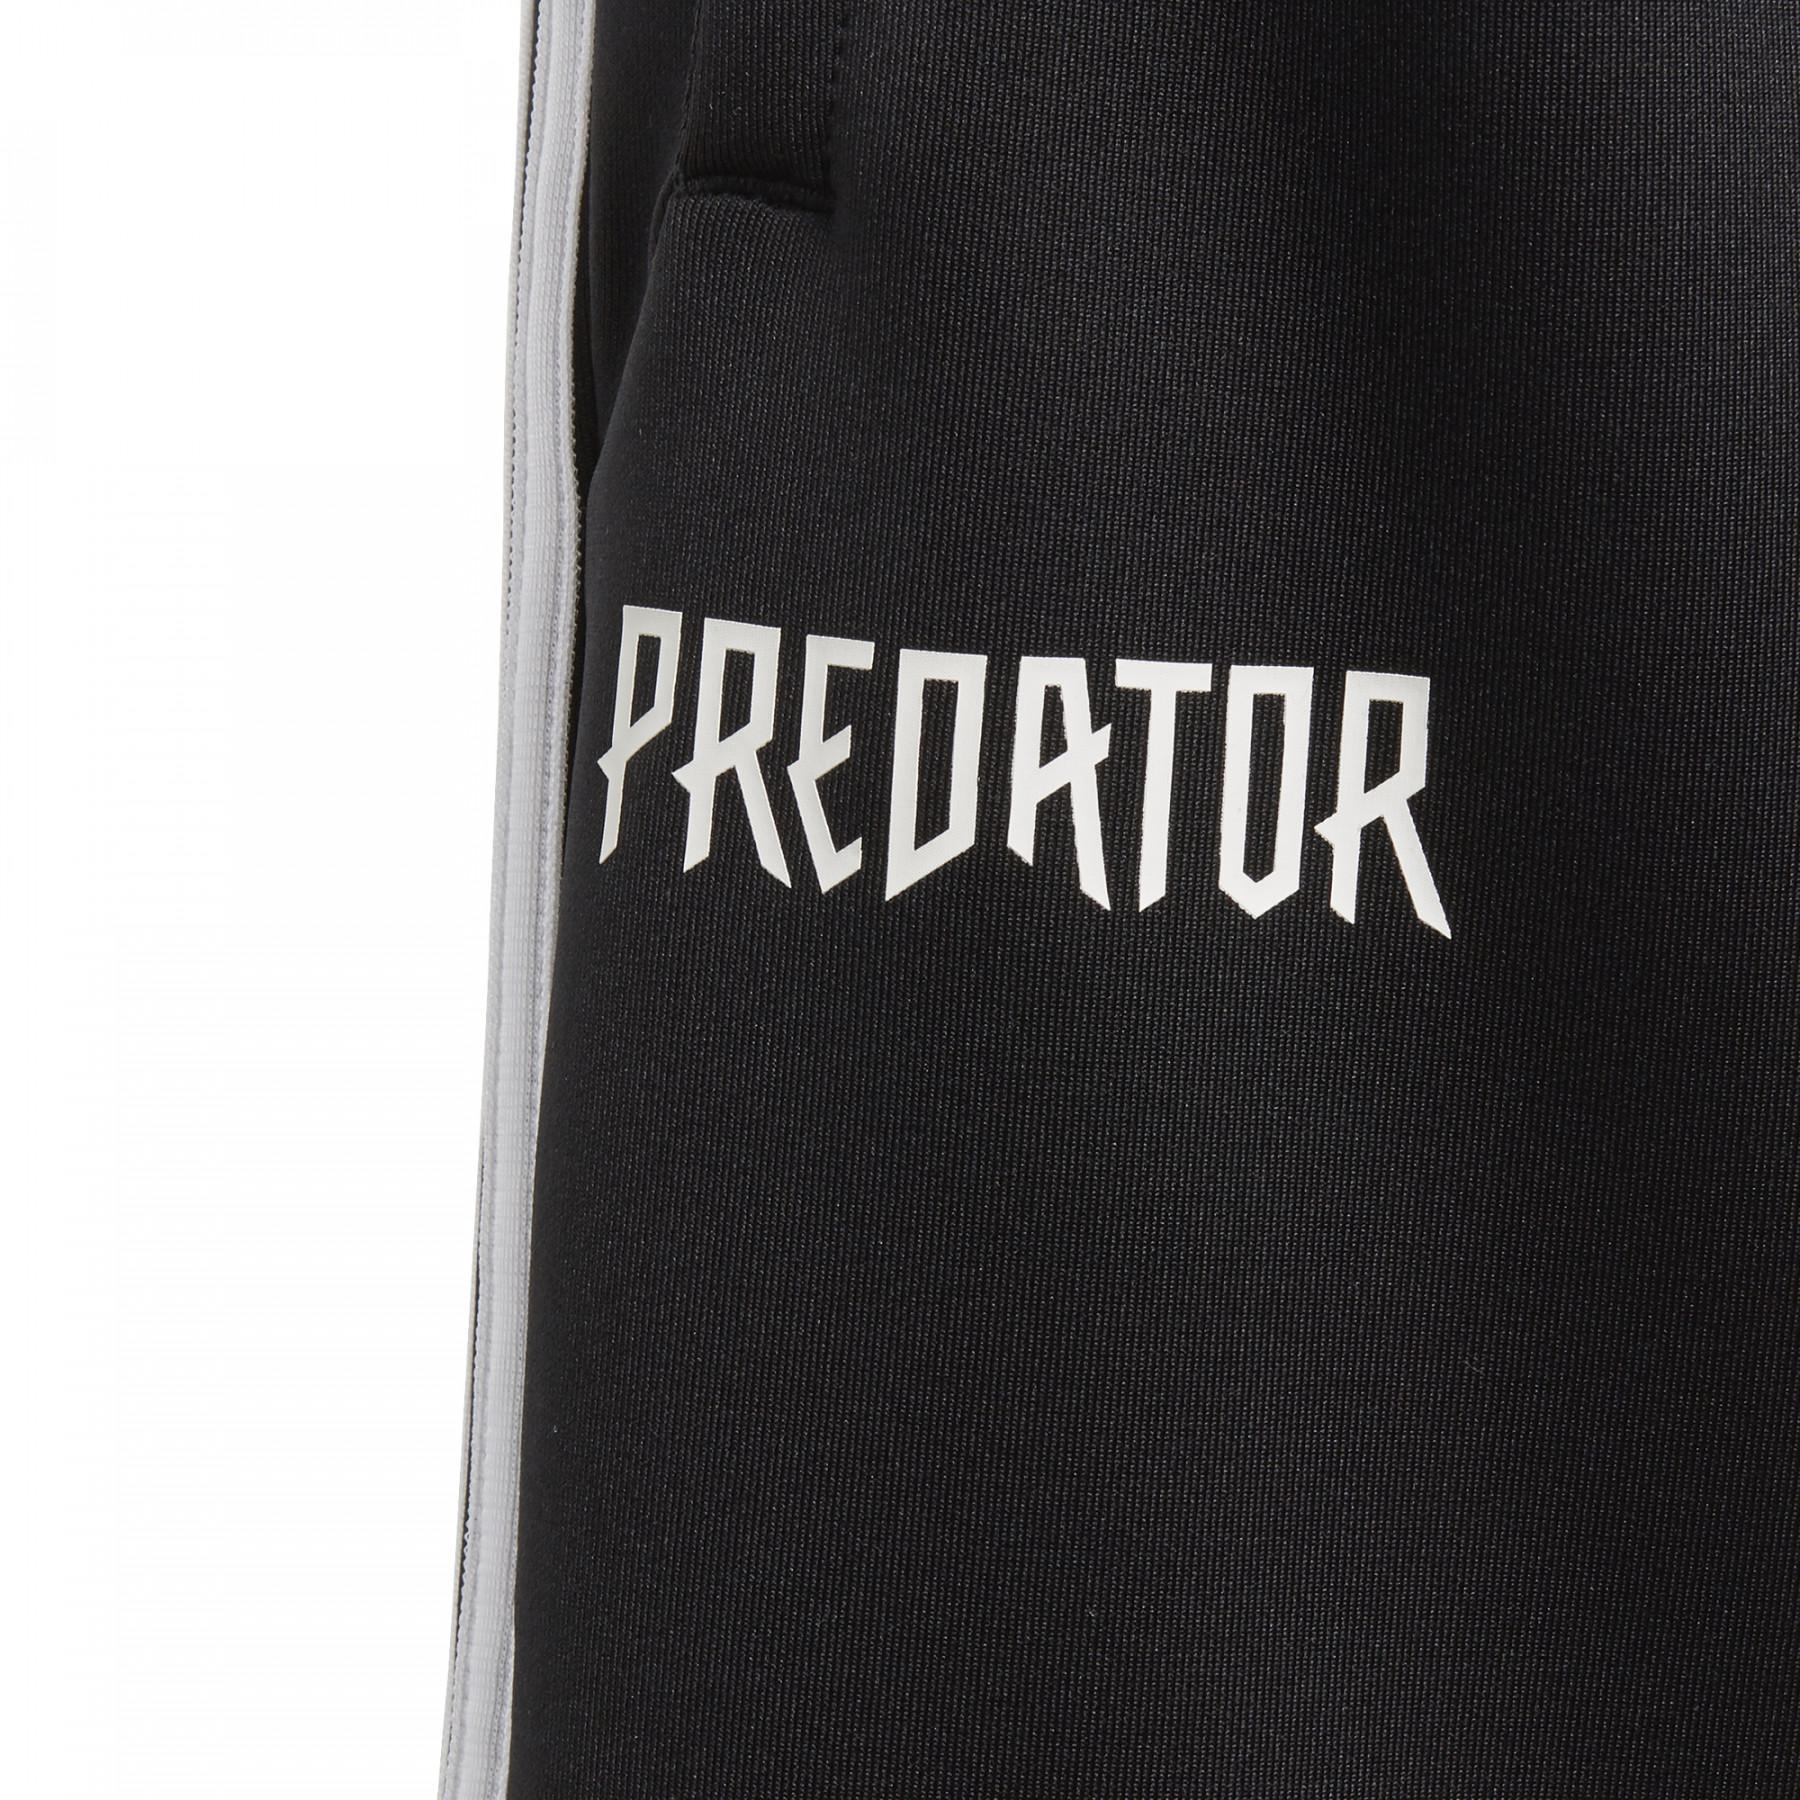 Shorts för barn adidas Predator 3-Stripes